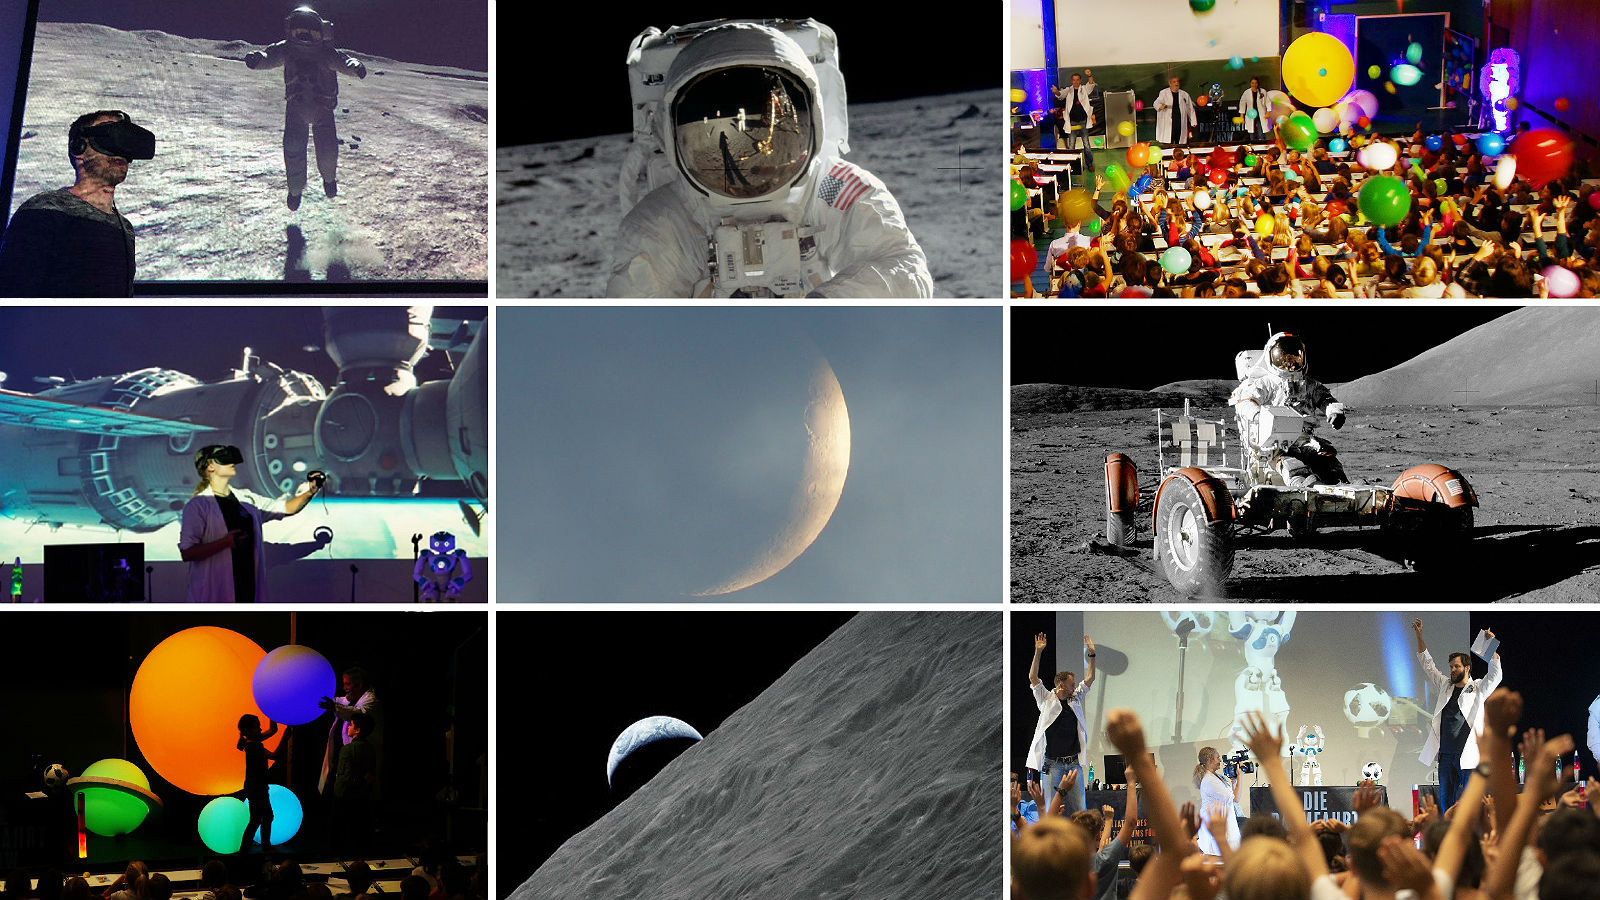 Die DLR_Raumfahrt_Show nimmt die Zuschauer mit auf eine spannende Reise zum Mond. Bilder: NASA, DLR